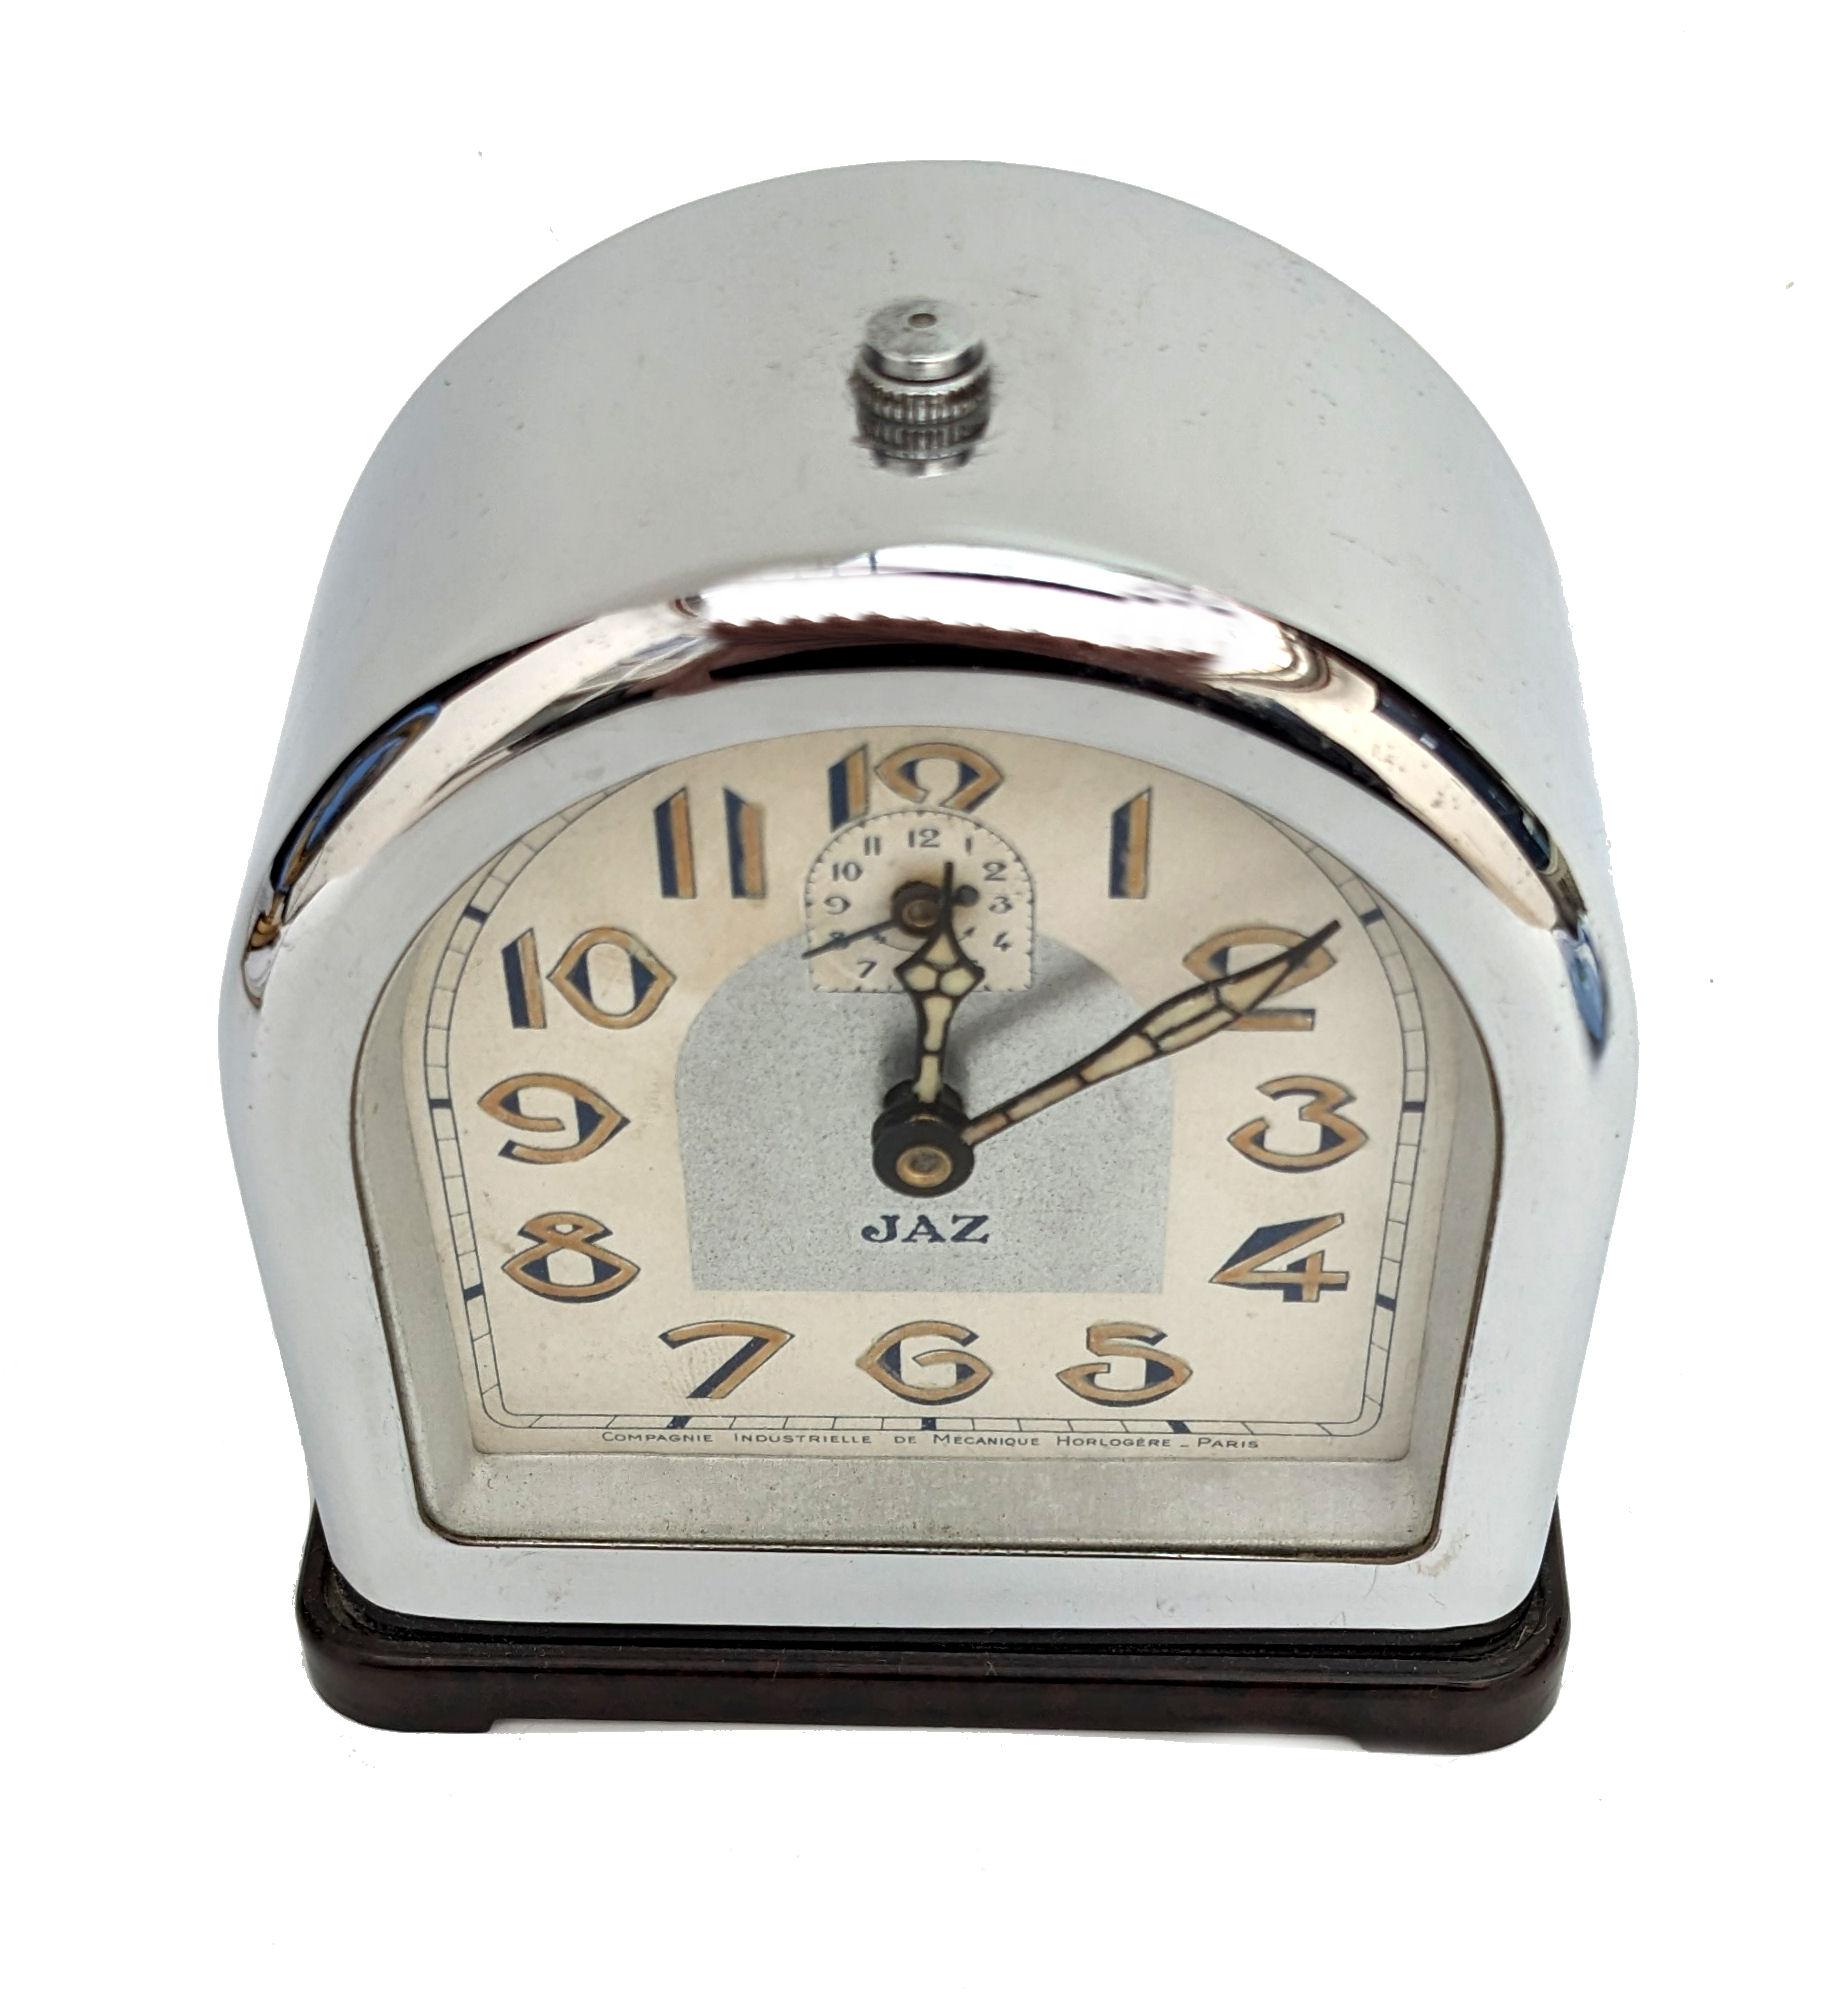 Prächtige Art-Déco-Uhr aus Chrom und Bakelit aus den 1930er Jahren von der Firma JAZ. Diese Uhr ist in bemerkenswert gutem Zustand. Oft sind diese Uhren mit schweren Chrom anlaufen oder Lochfraß gefunden, aber diese Schönheit scheint den Test der